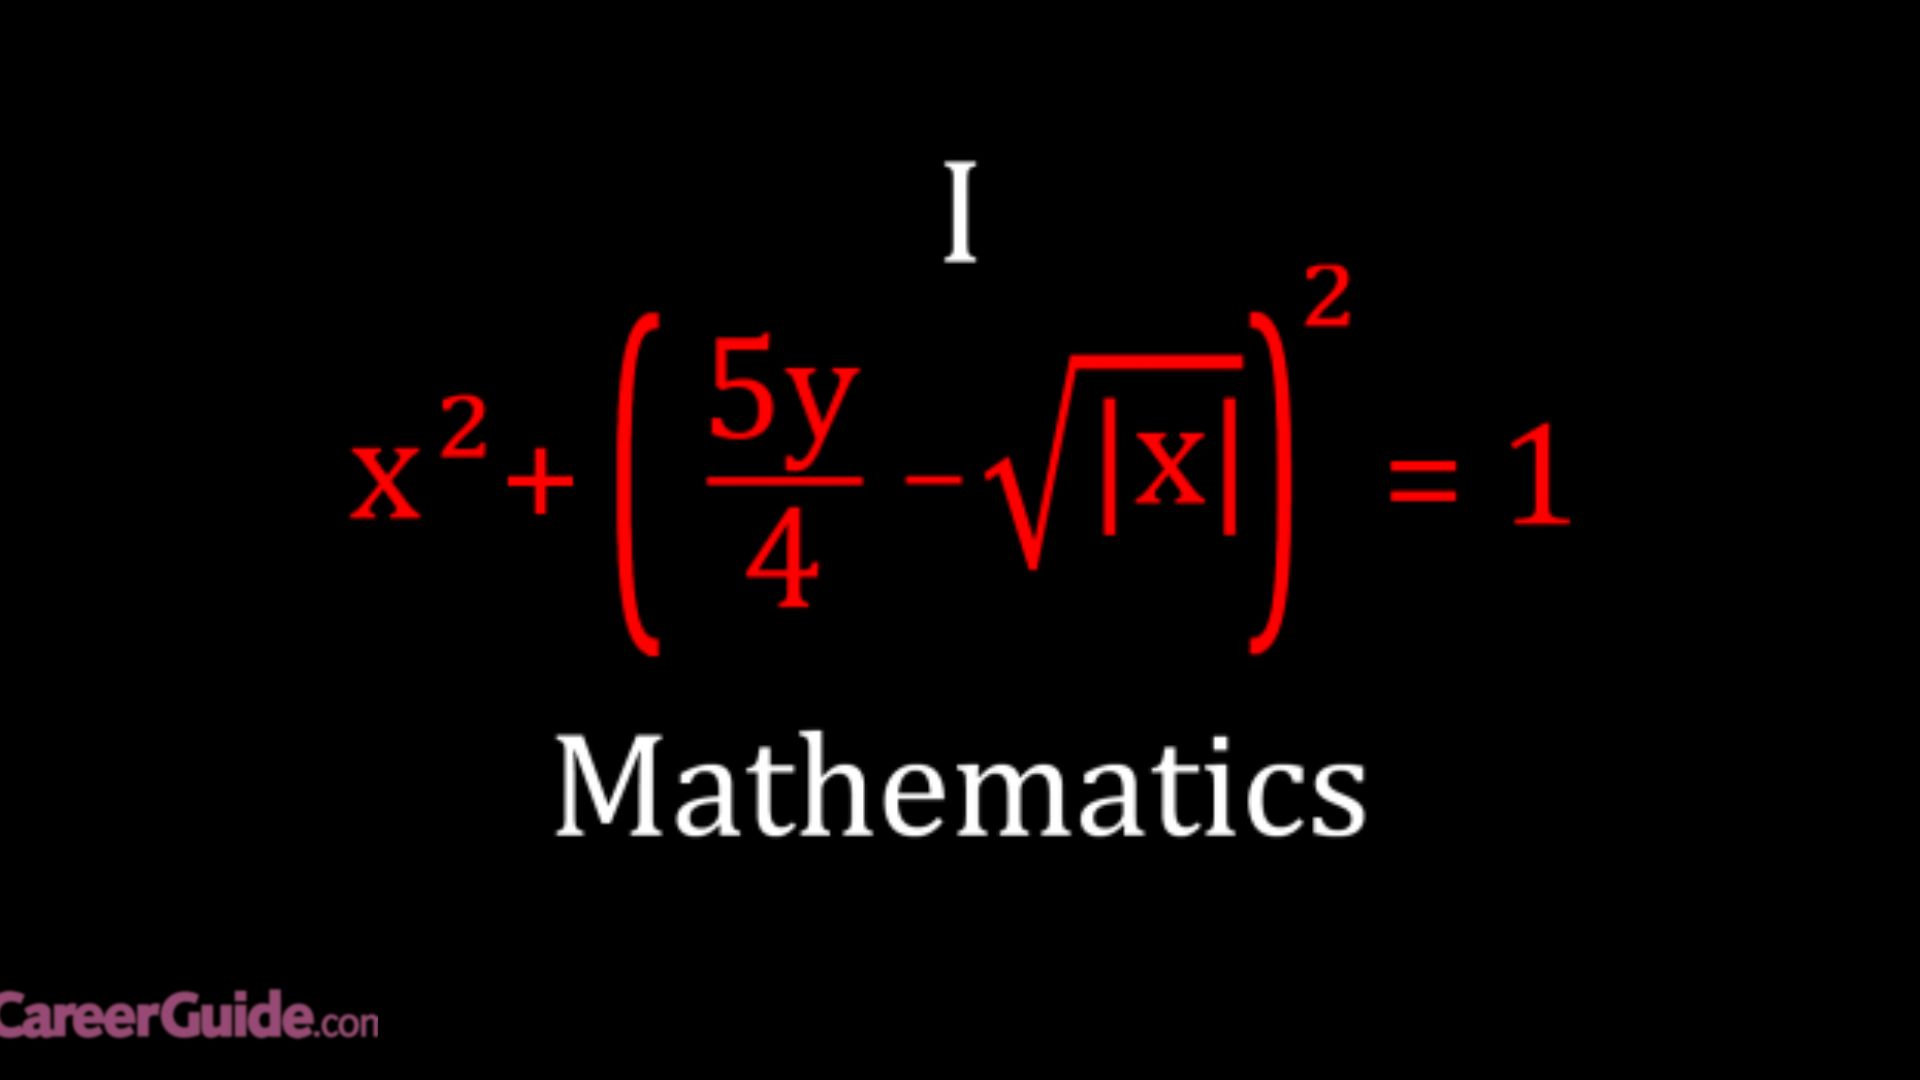 About Mathematics